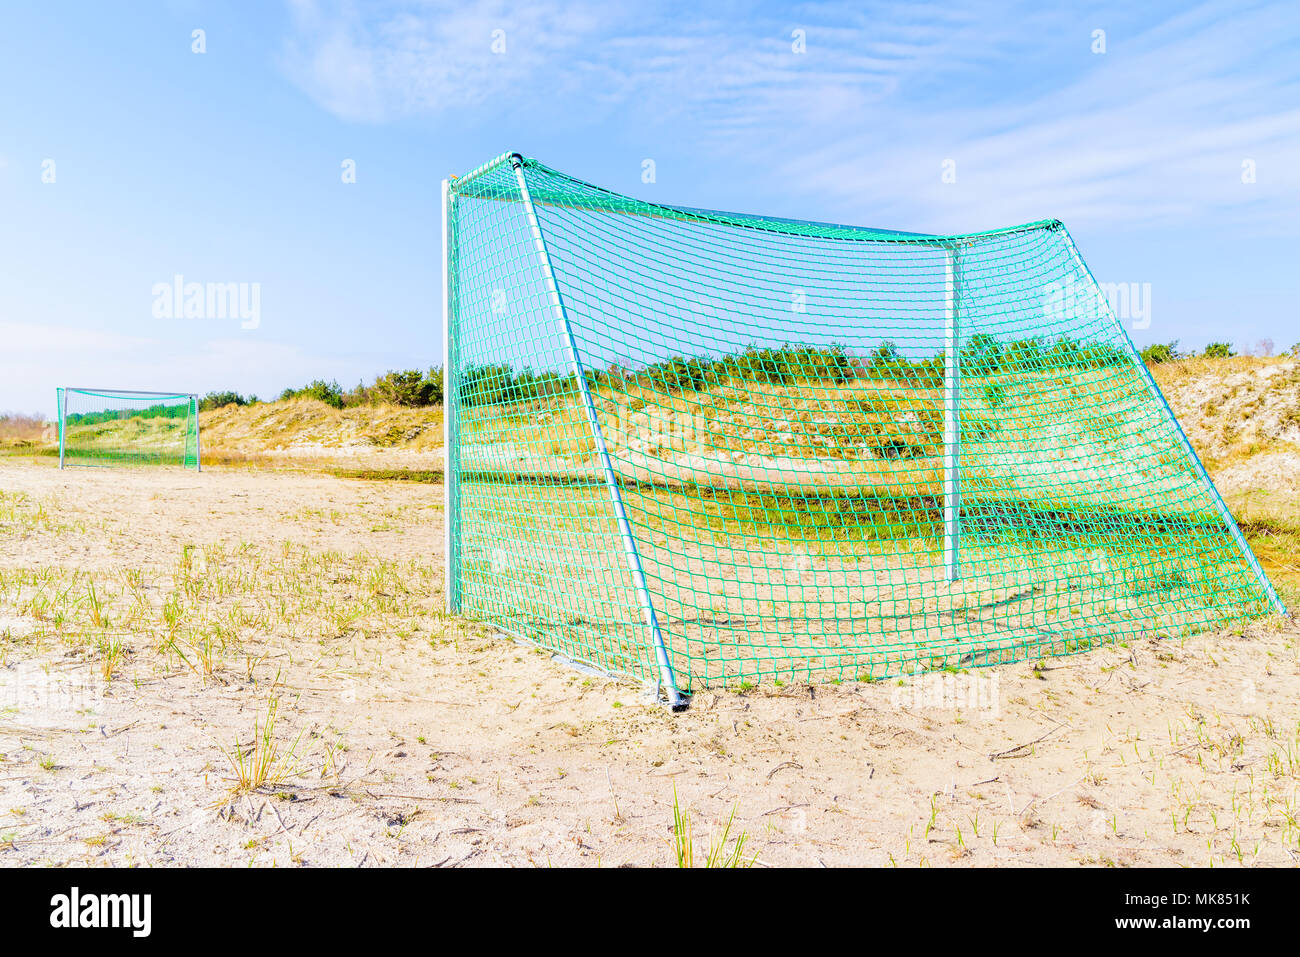 Malarhusen, Schweden - Fußball-Ziele auf einem Sandstrand zwischen Sanddünen an einem sonnigen Frühlingstag. Stockfoto